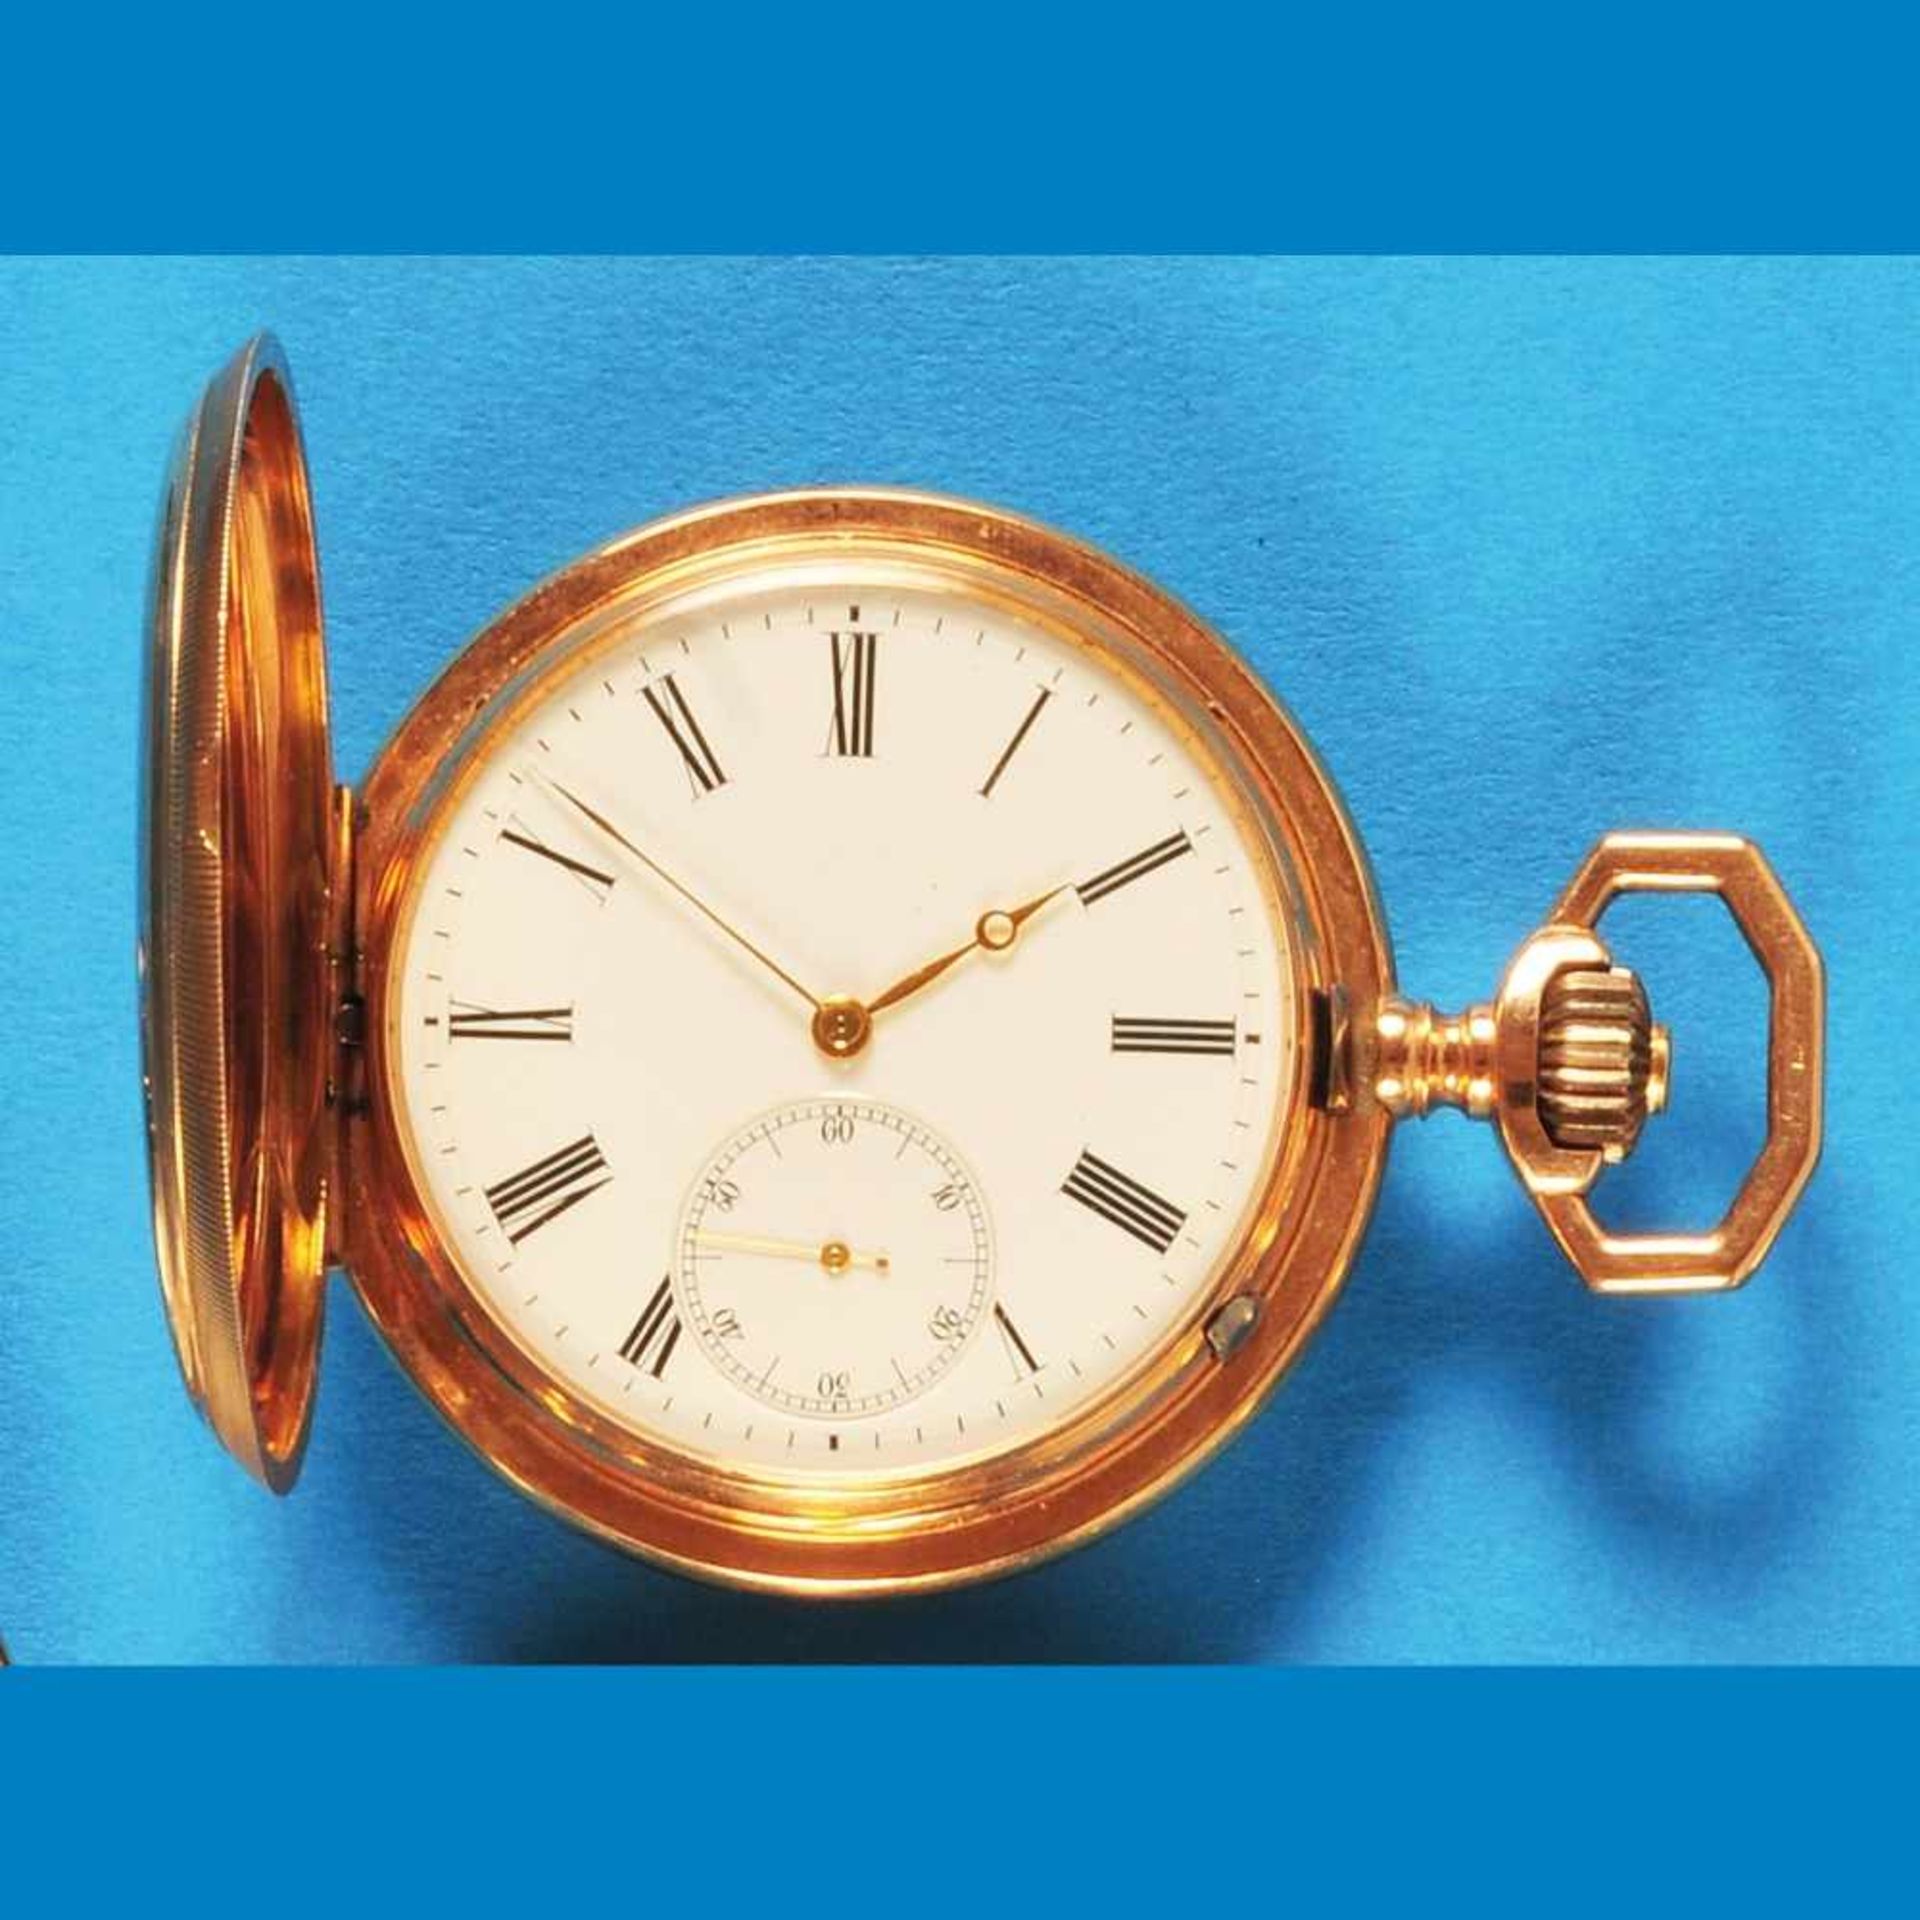 Golden pocket watch with spring coverGoldtaschenuhr mit Sprungdeckel, glattes 14-ct.-Goldge - Bild 2 aus 2